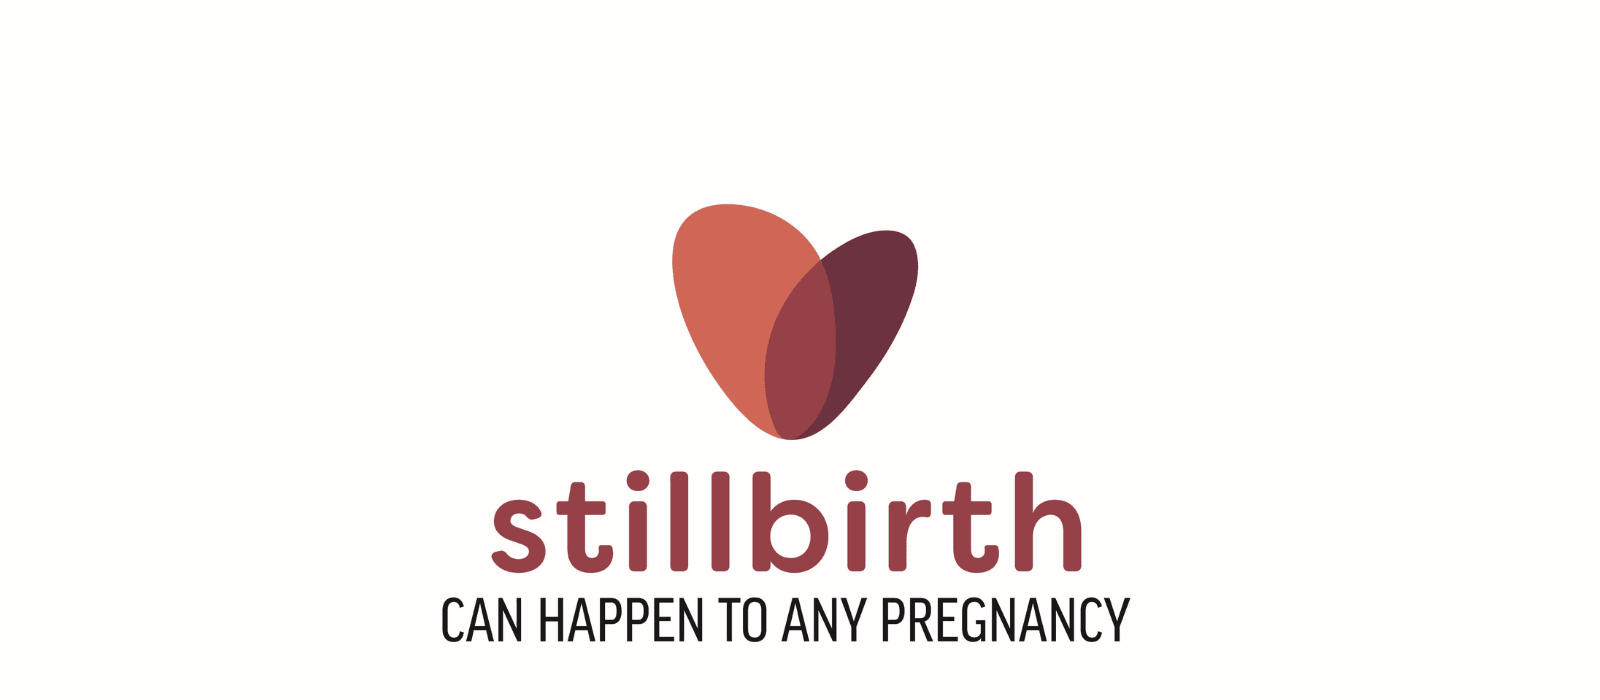 NJ Spotlight News Shining Light on Stillbirth: New Jersey’s Bold Awareness Campaign